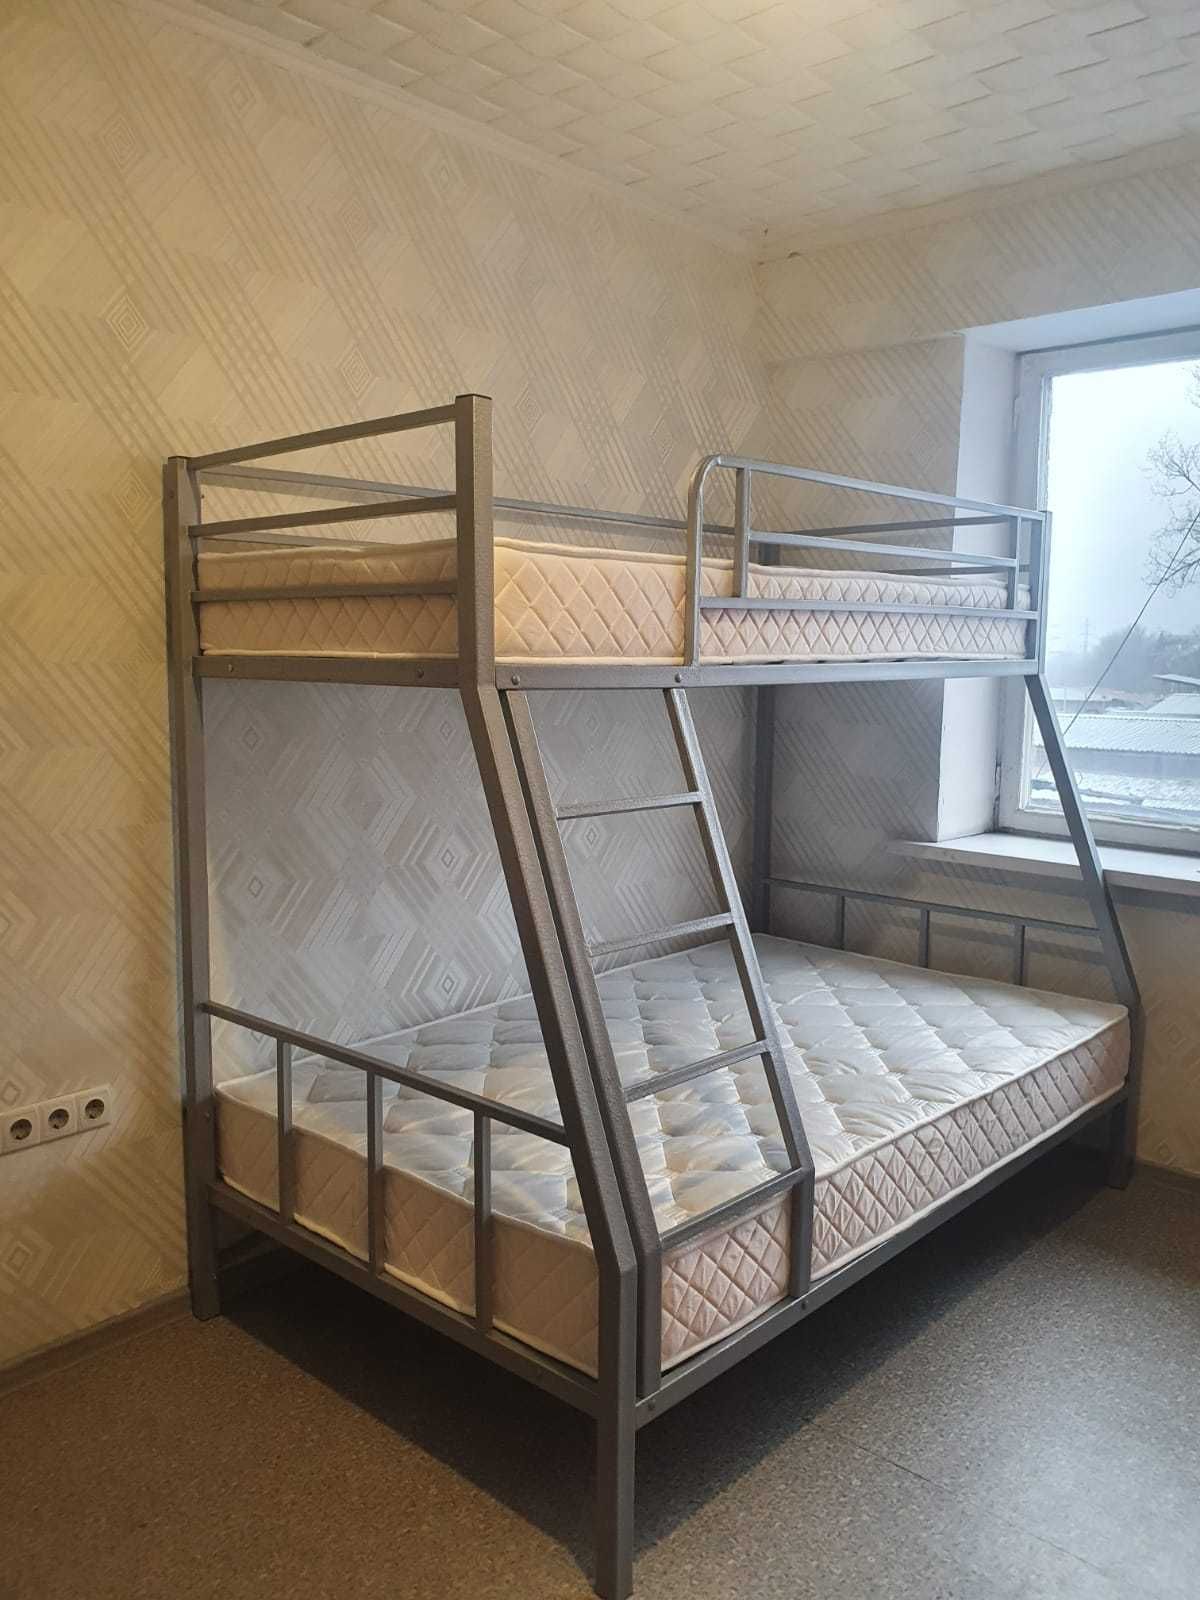 Двухъярусная кровать для взрослых (двухярусная). Доставка бесплатно.